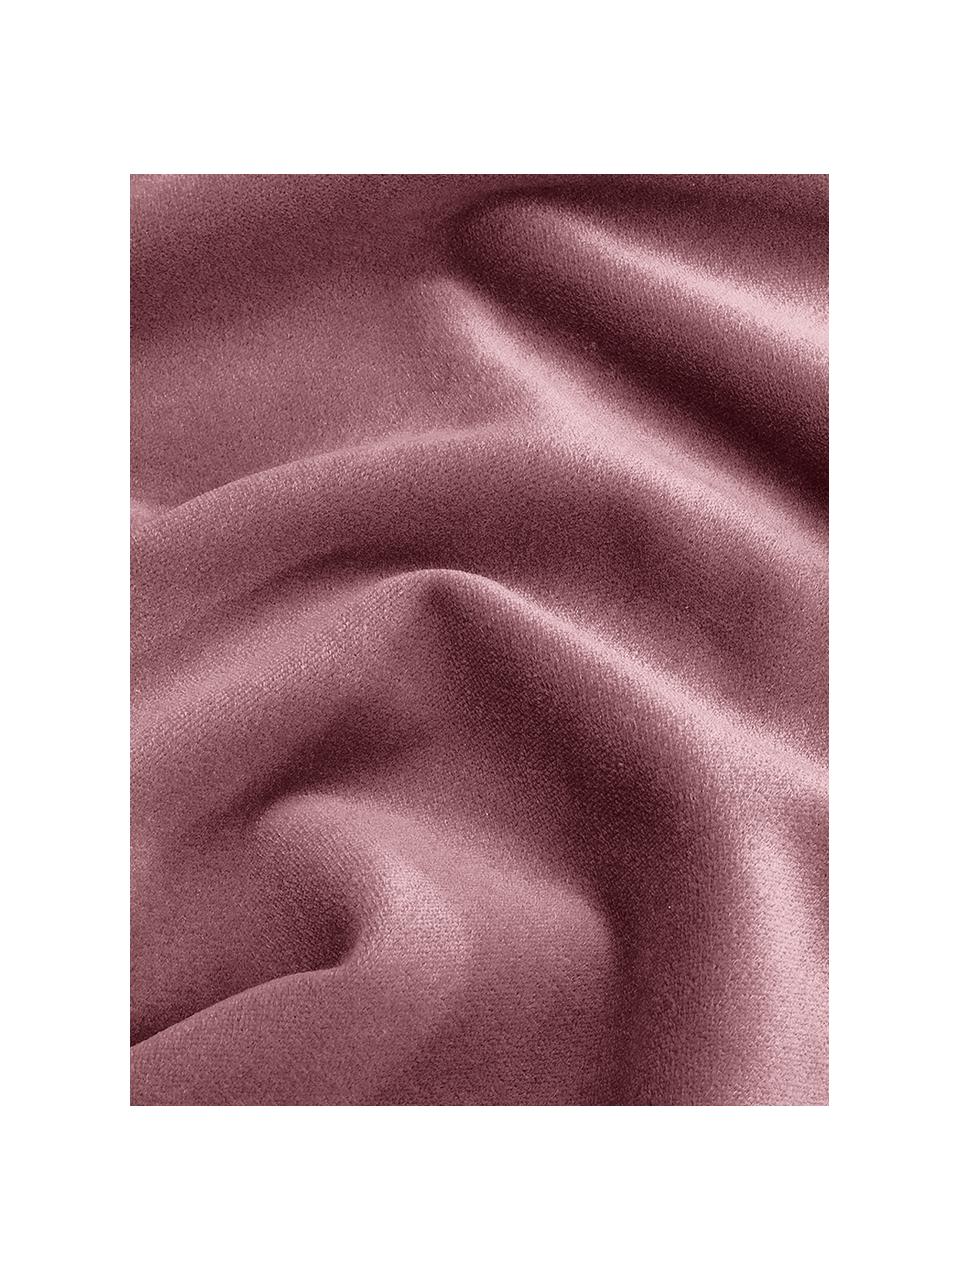 Einfarbige Samt-Kissenhülle Dana in Altrosa, 100% Baumwollsamt, Altrosa, B 40 x L 40 cm